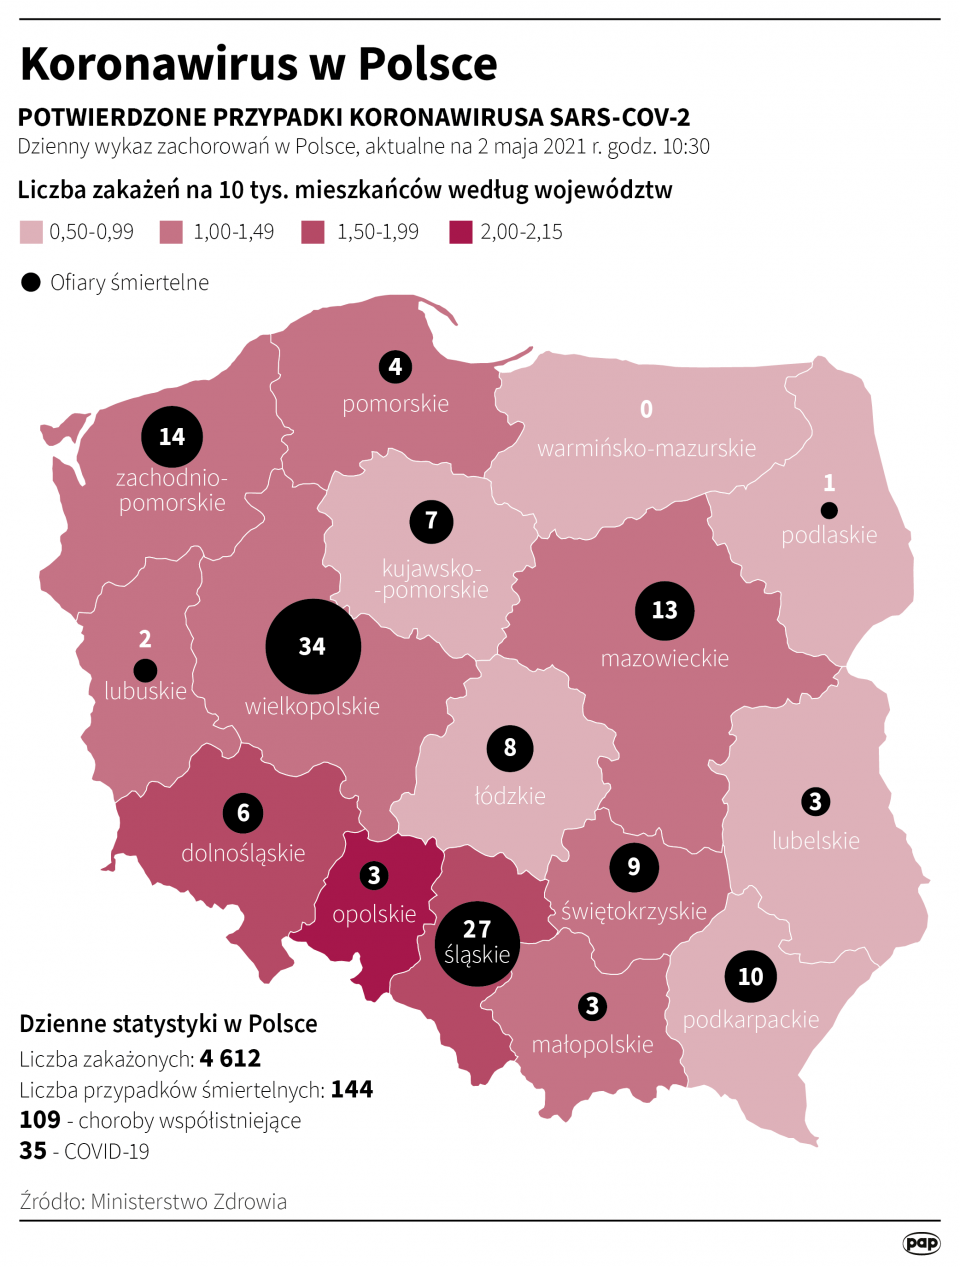 Koronawirus w Polsce stan na 2 maja [autor: Maria Samczuk, źródło: PAP]